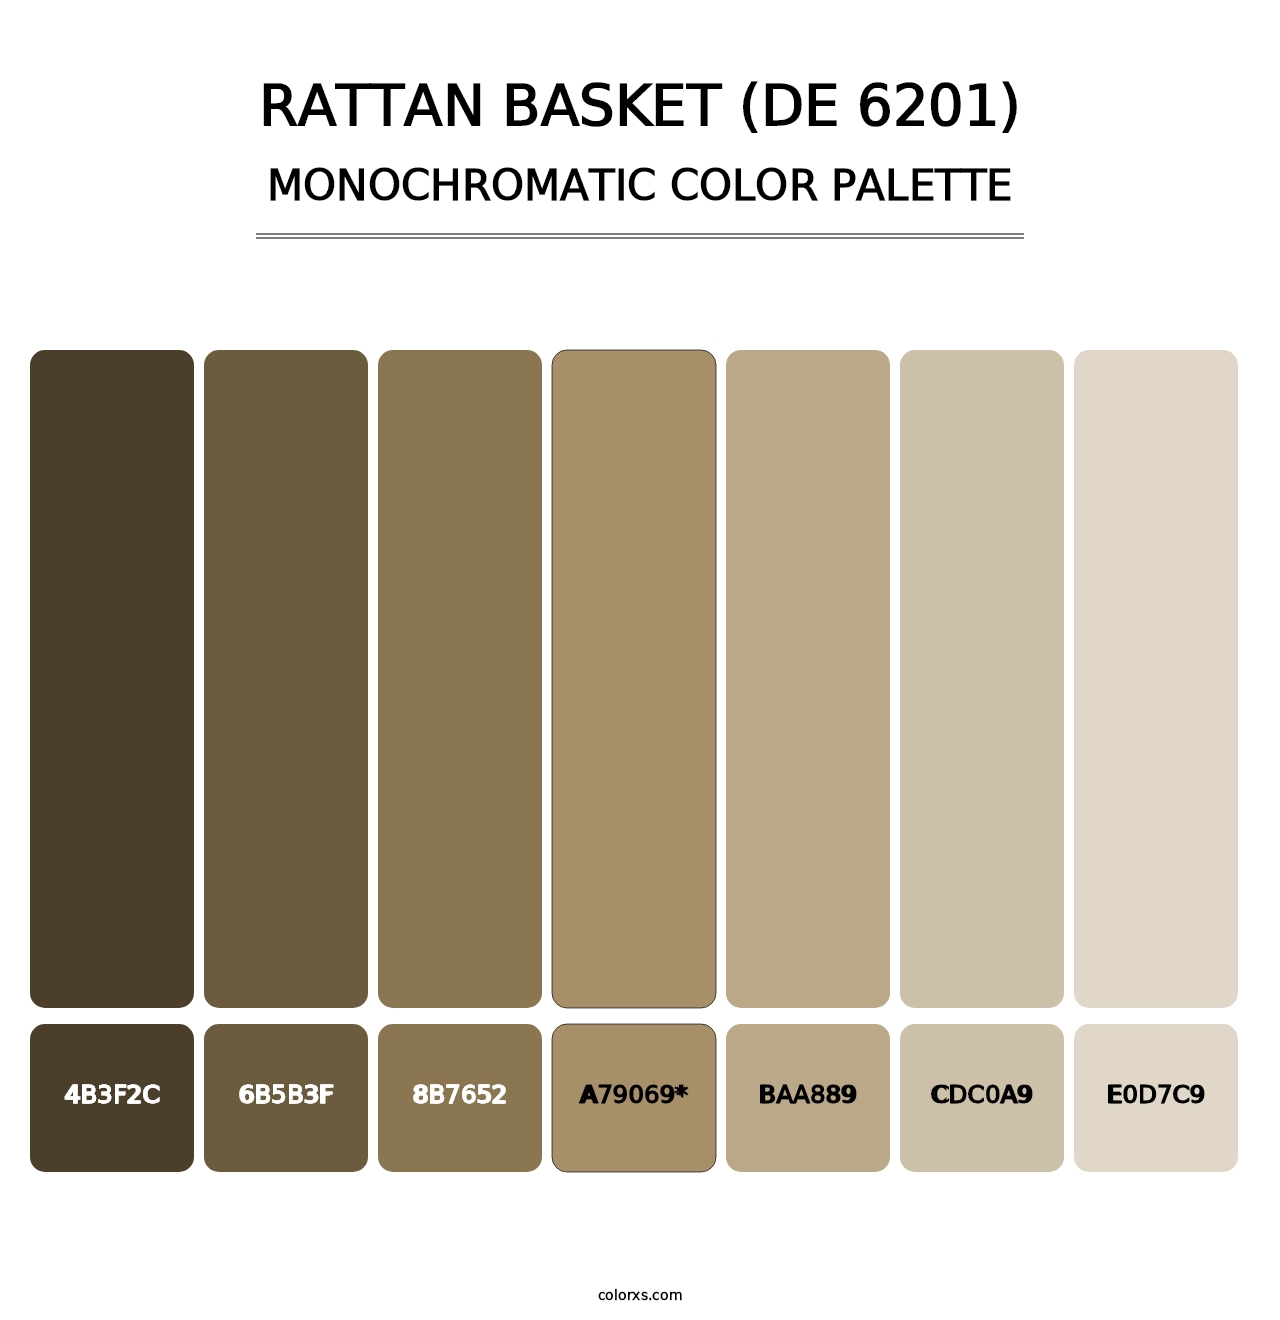 Rattan Basket (DE 6201) - Monochromatic Color Palette